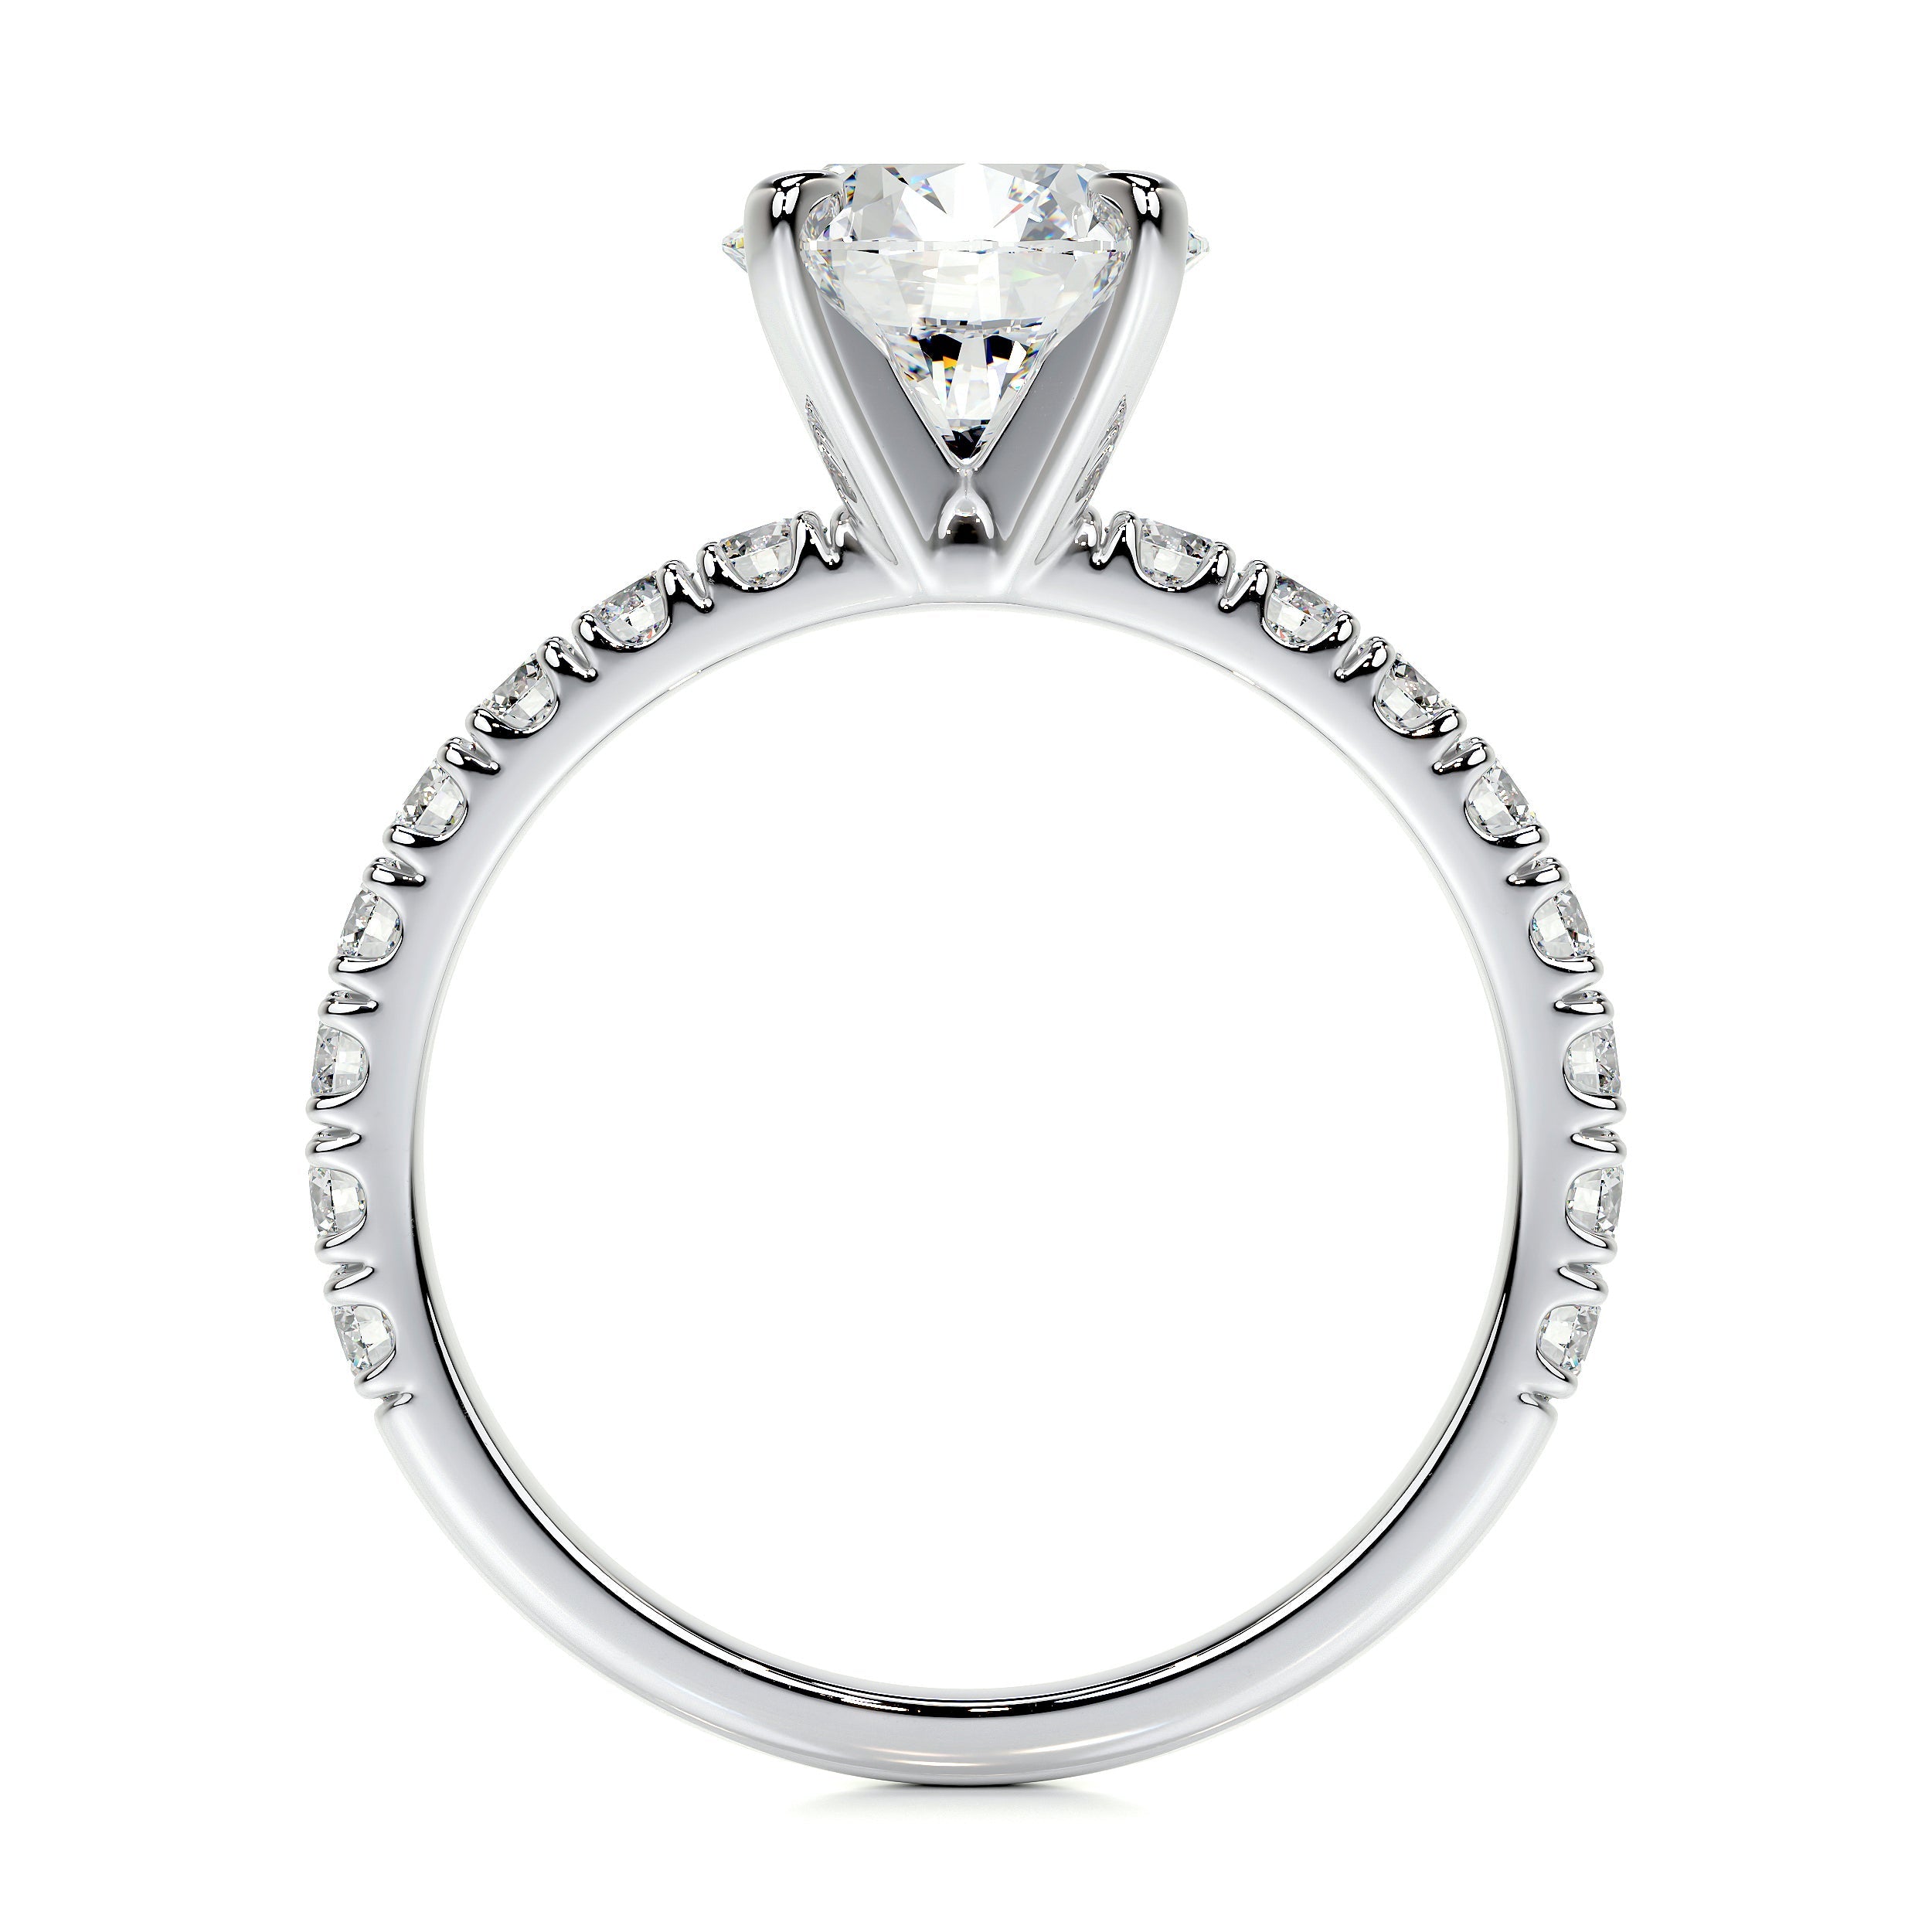 Alison Lab Grown Diamond Ring   (2 Carat) -14K White Gold